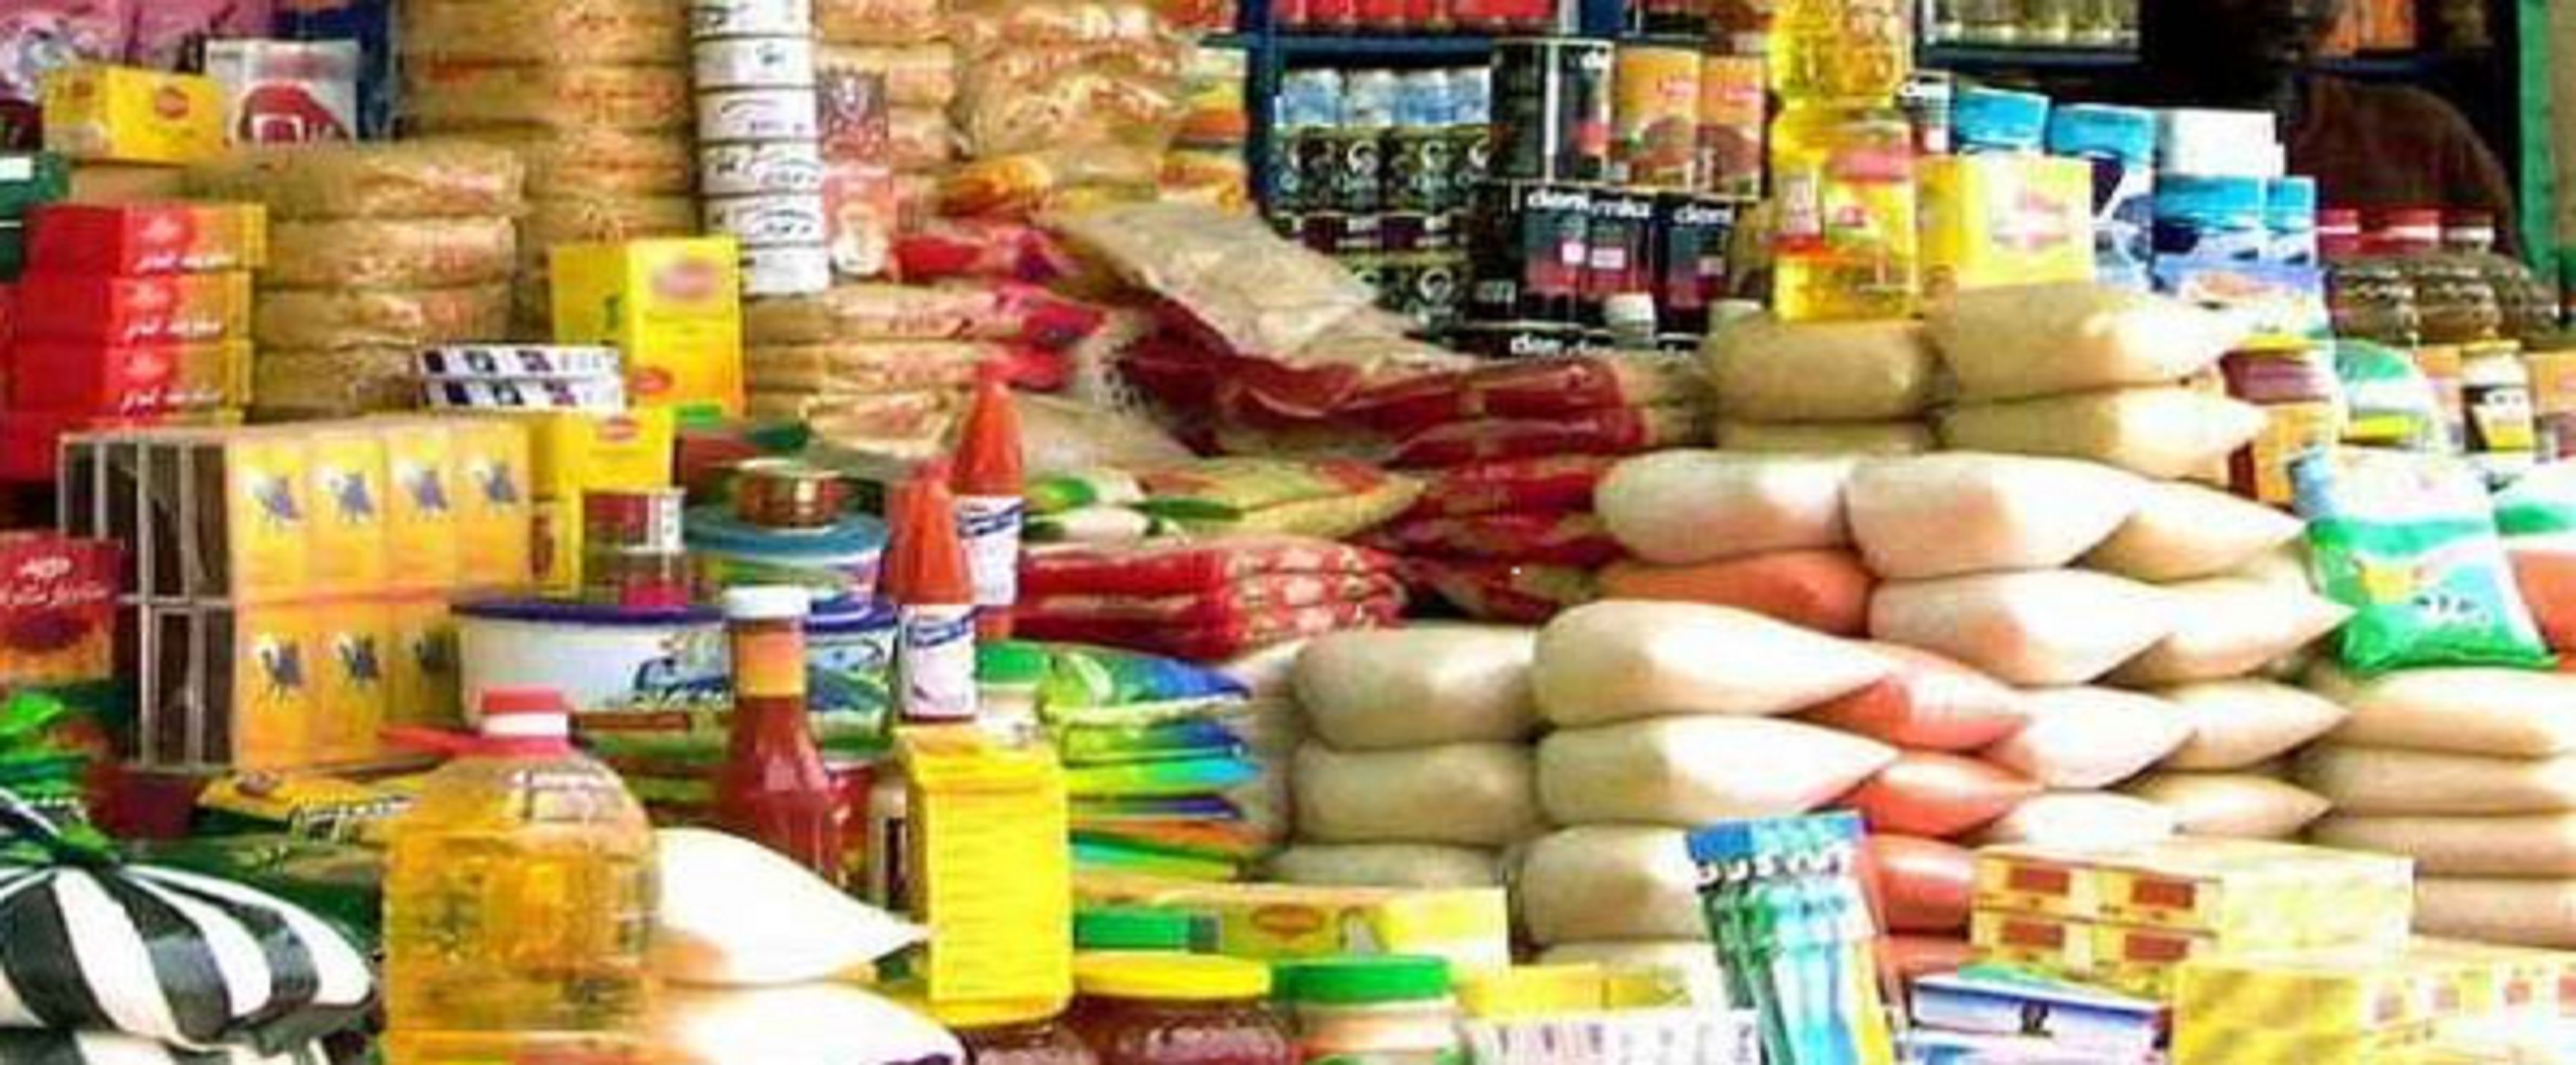   ضبط 16 طن مواد غذائية فاسدة بالإسكندرية